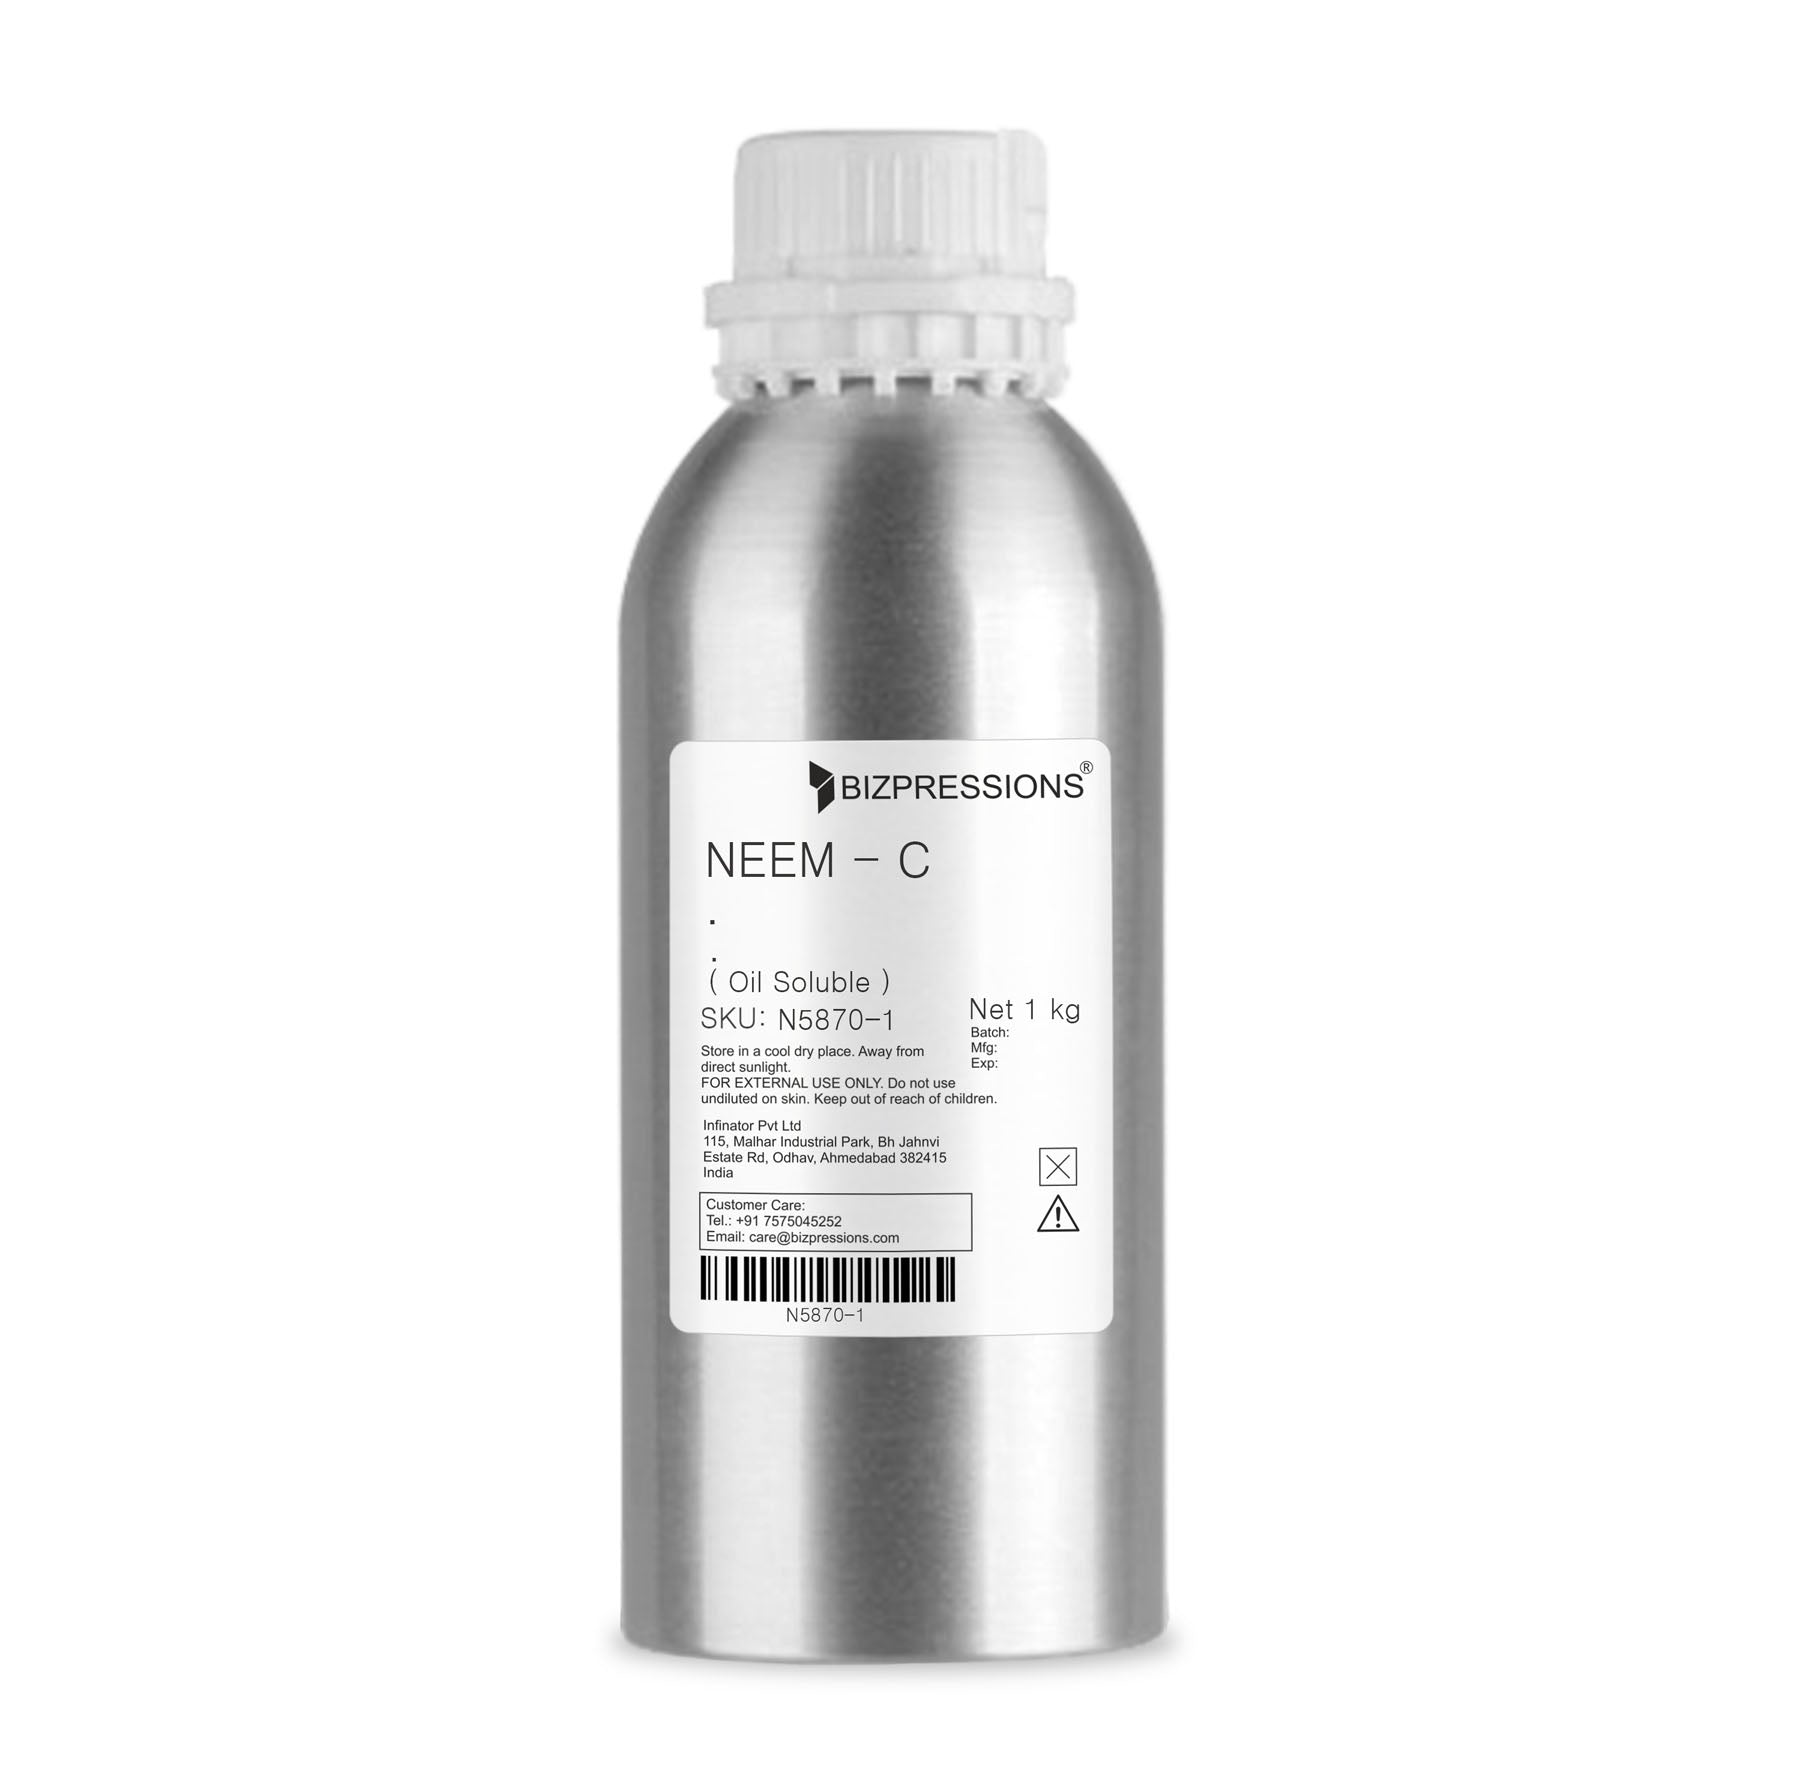 NEEM - C - Fragrance ( Oil Soluble ) - 1 kg